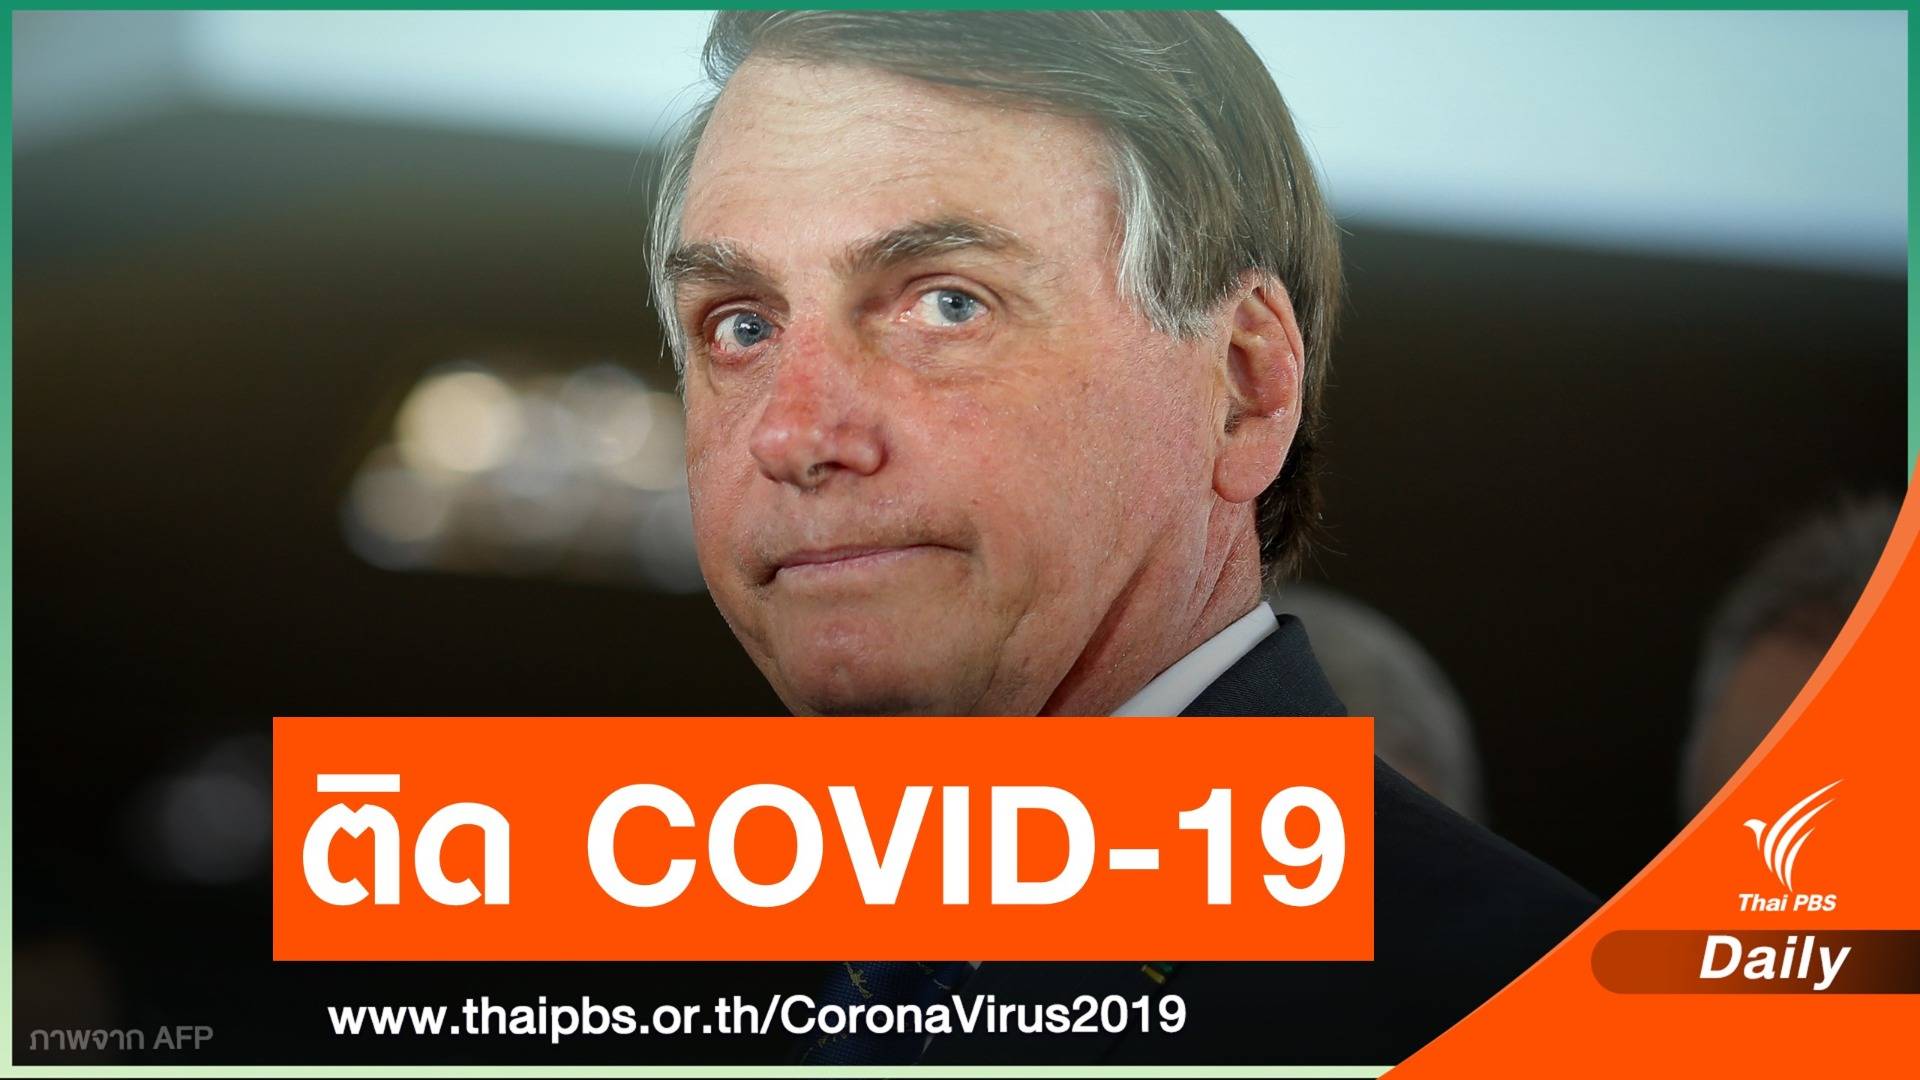 ประธานาธิบดีบราซิล ยอมรับติดเชื้อ COVID-19